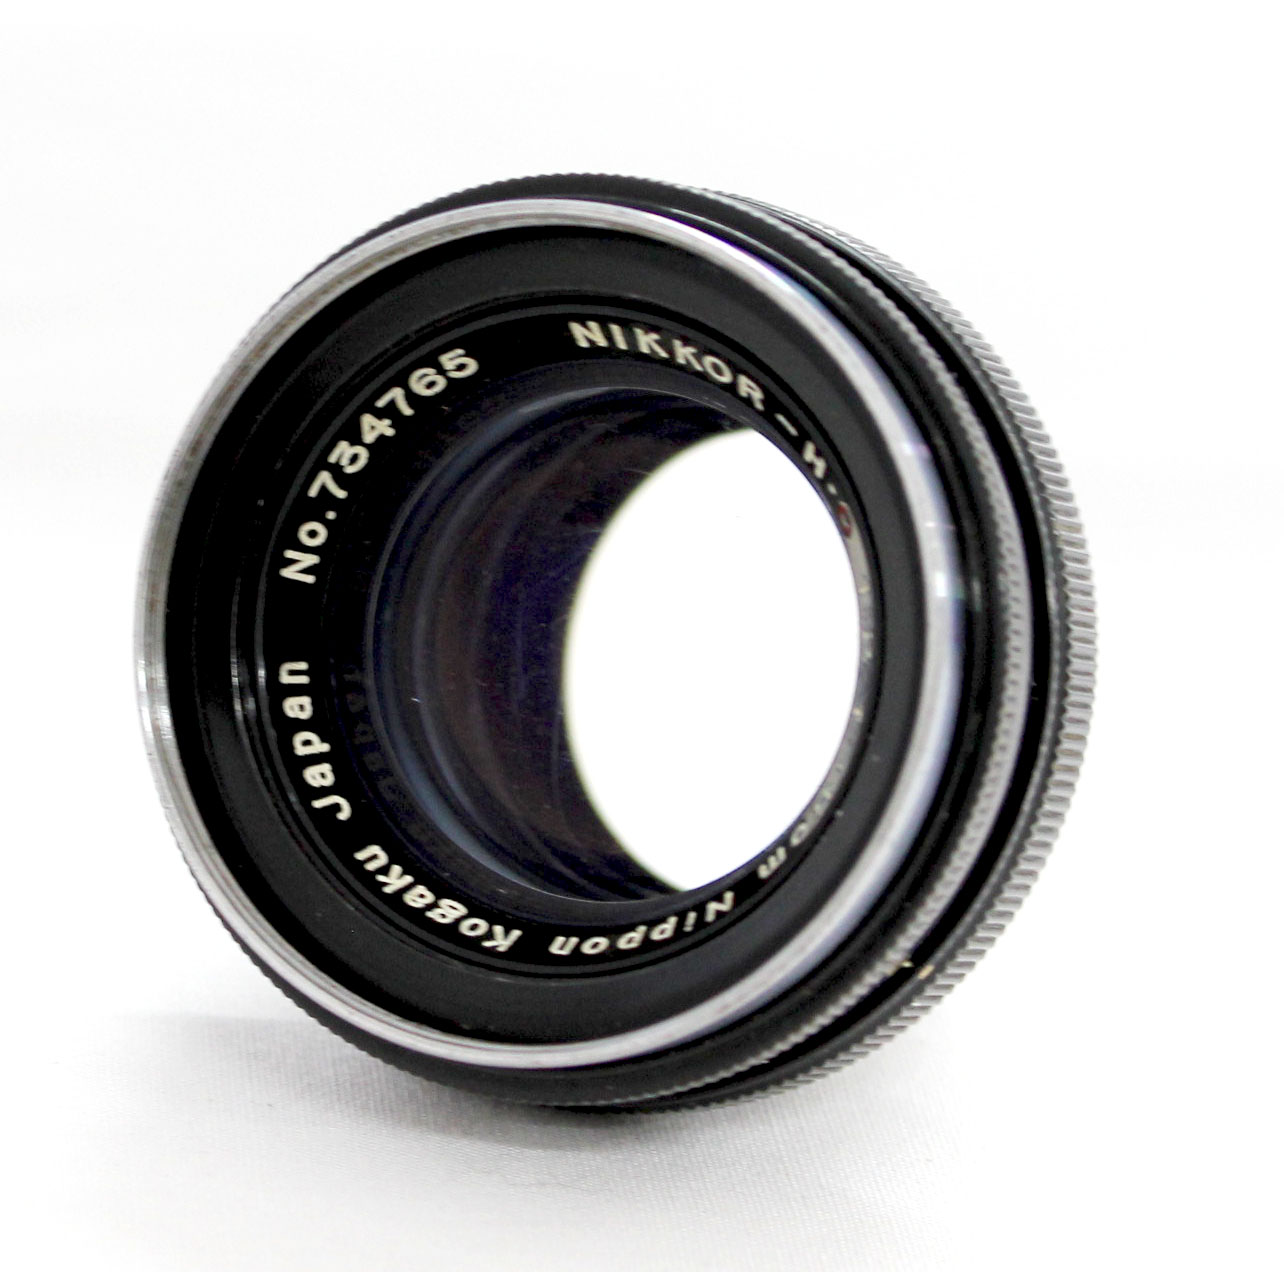 [Excellent++++] Nippon Kogaku Nikkor-H.C 5cm 50mm F/2 Lens for Nikon S Mount from Japan